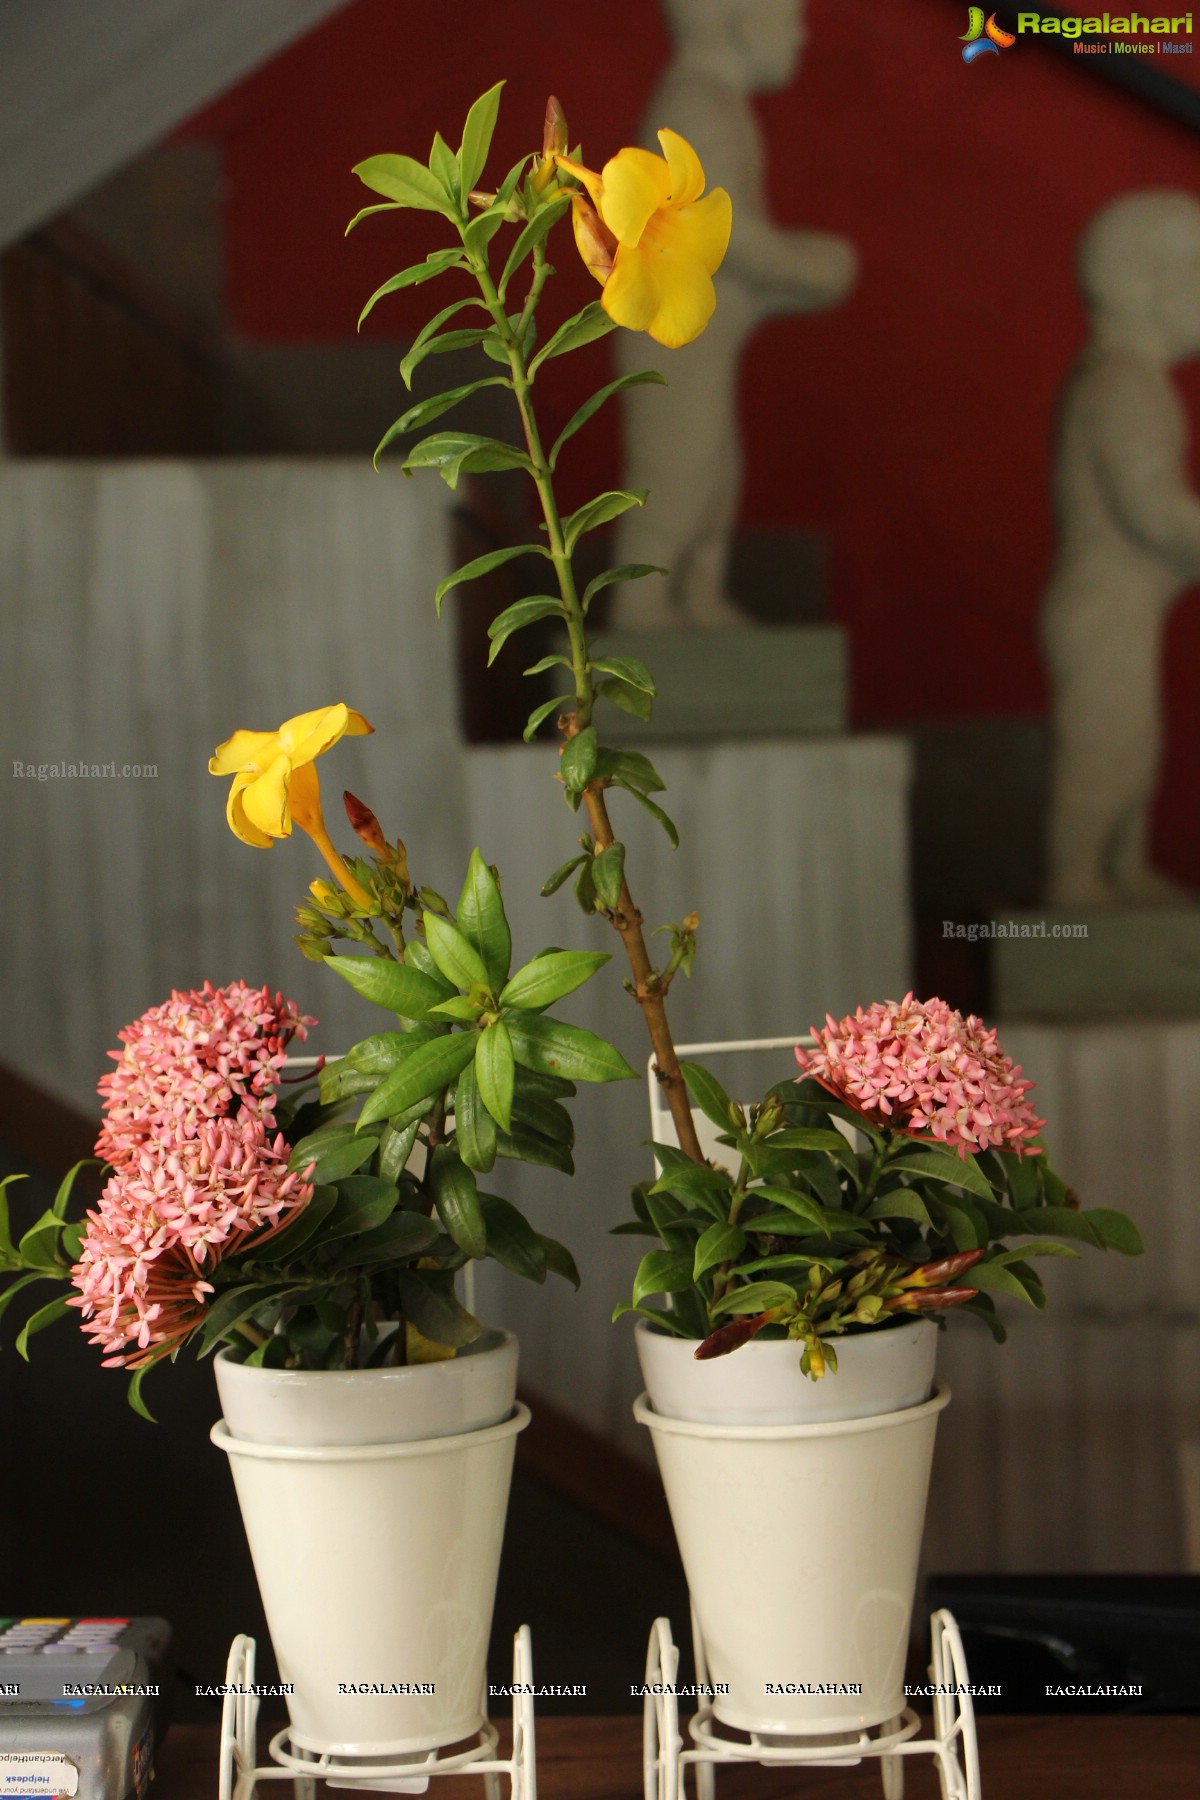 'Eucalyptus & Ikebana' - An Ikebana Exhibition, Hyderabad